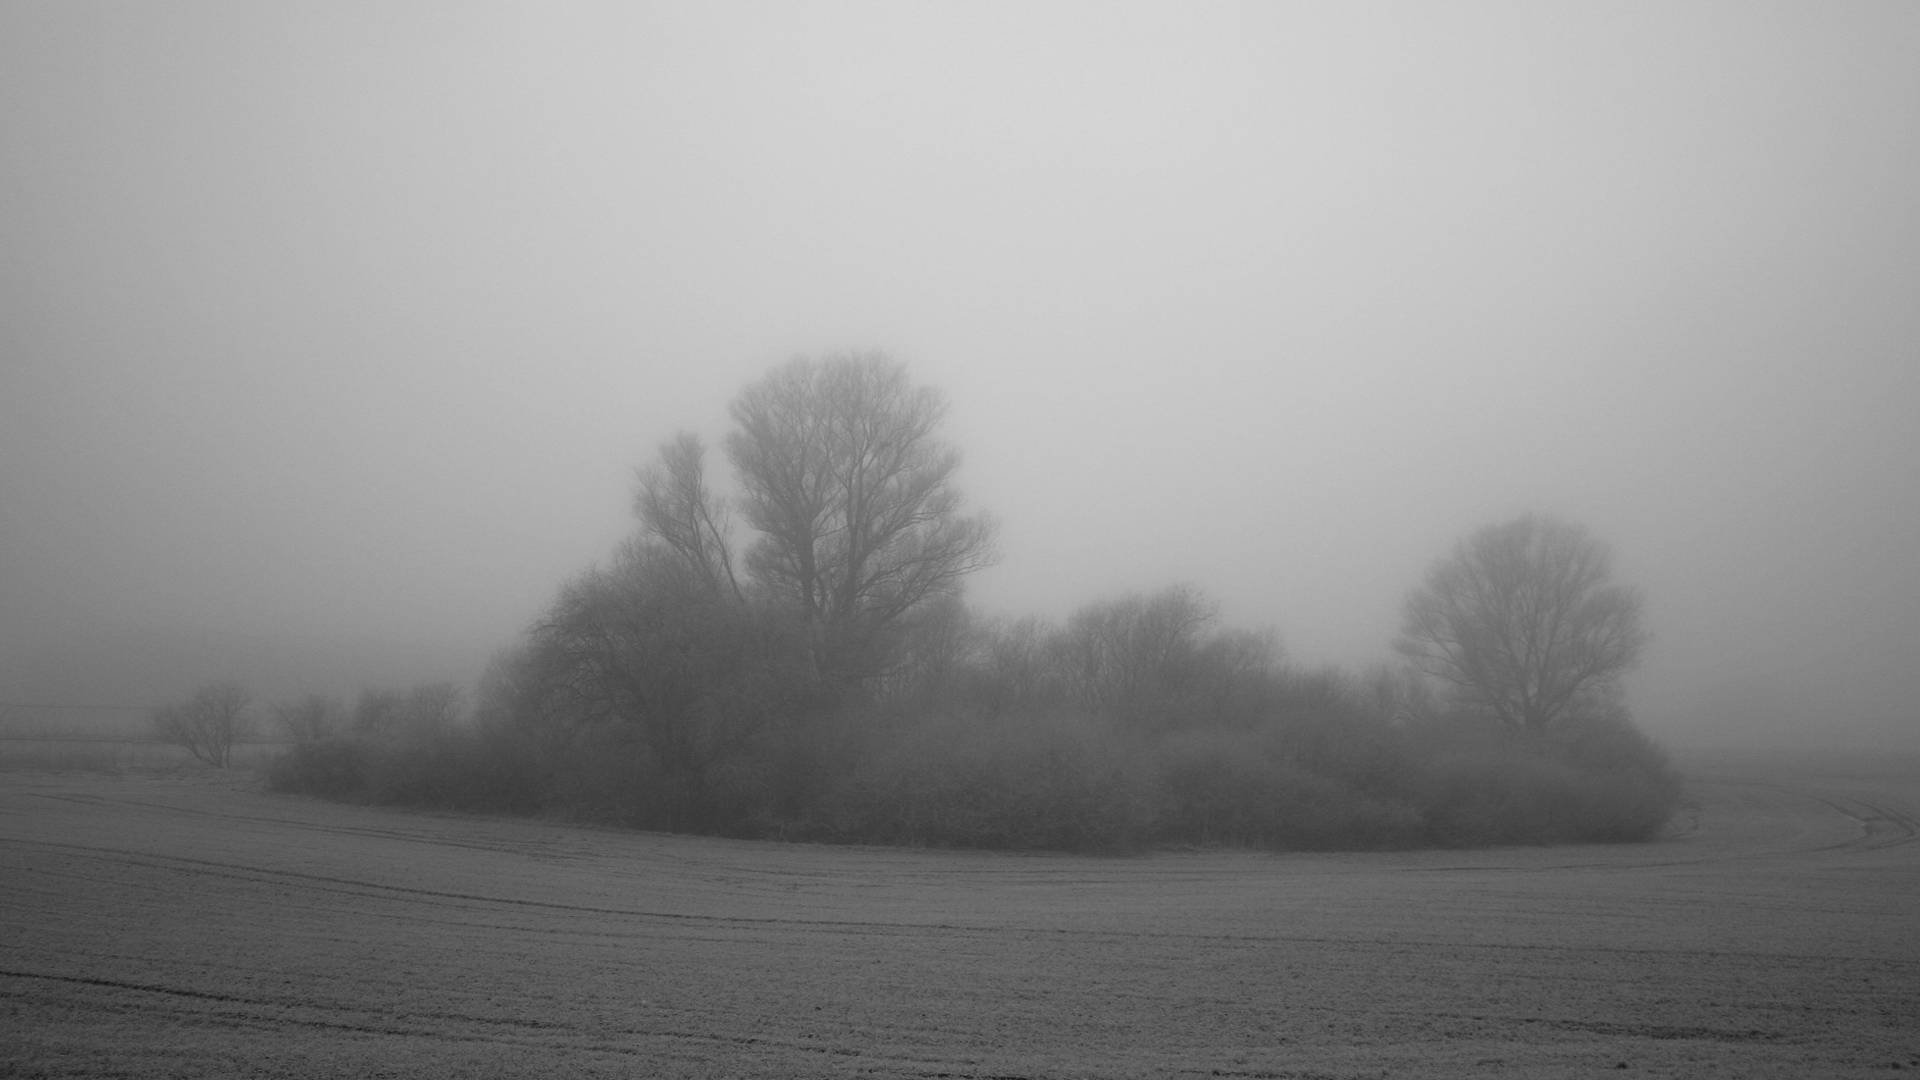 trees, gray, fog, bushes - desktop wallpaper